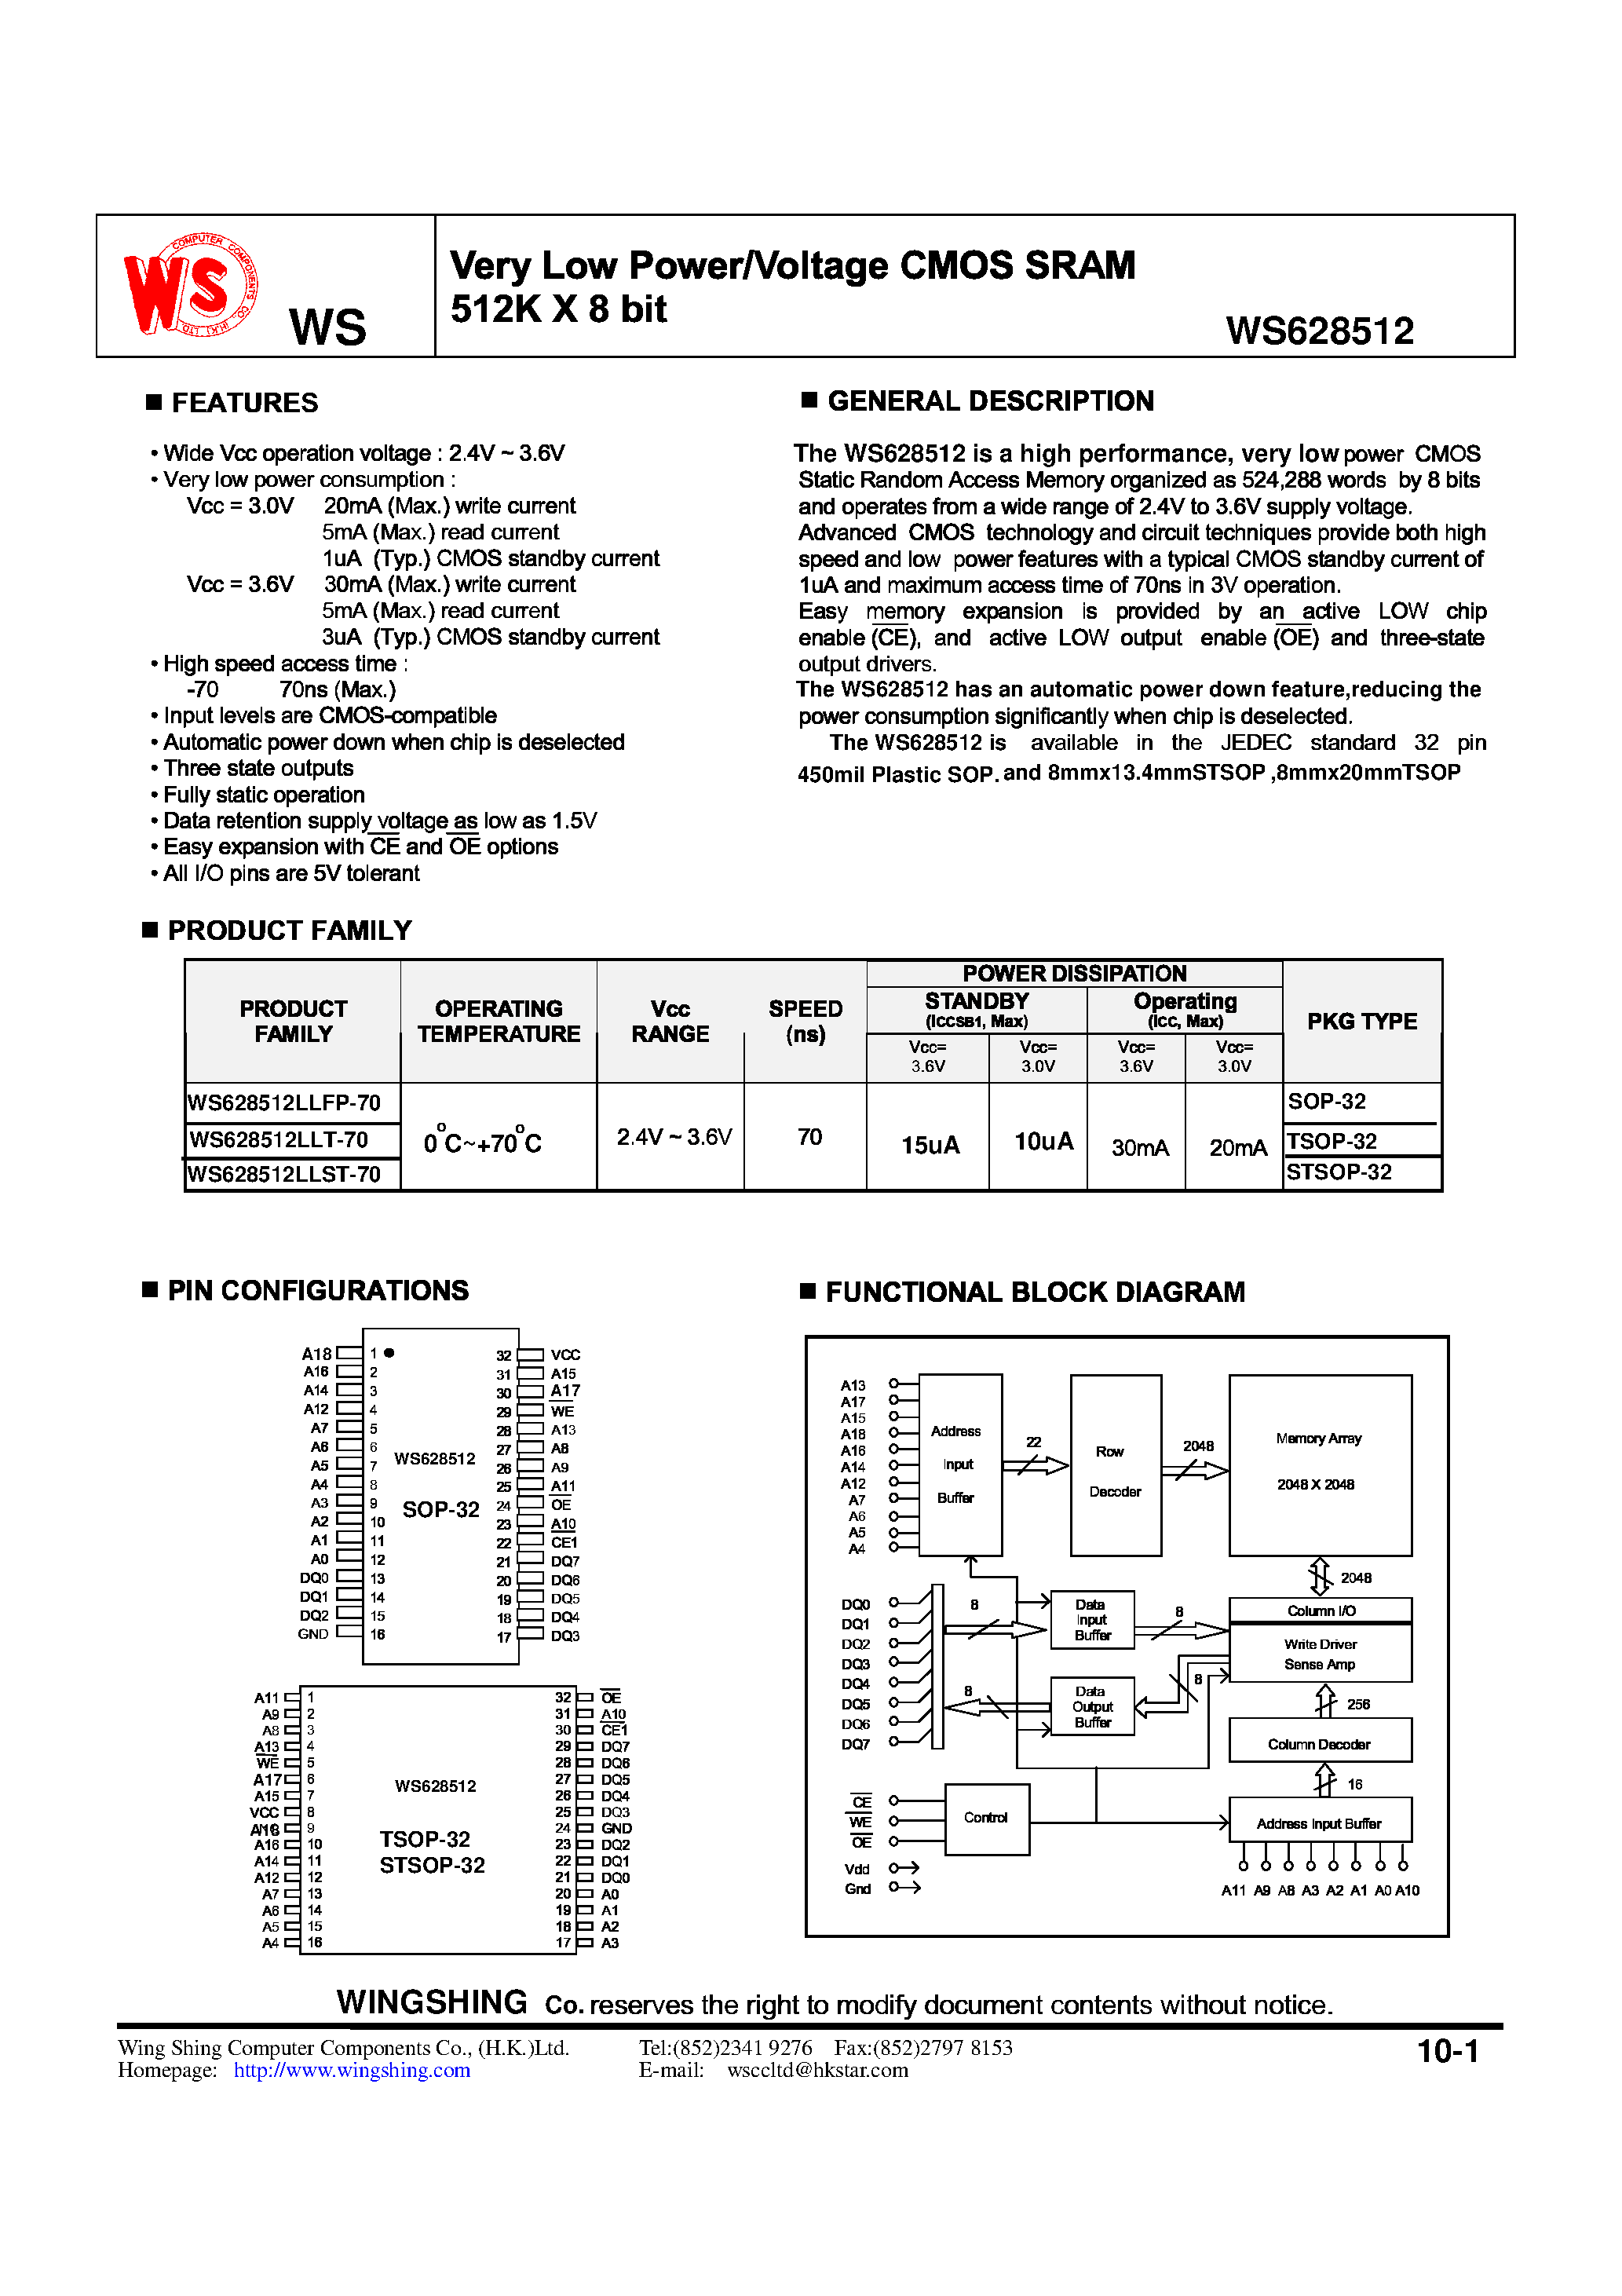 Datasheet WS628512LLT-70 - Very Low Power/Voltage CMOS SRAM 512K X 8 bit page 1